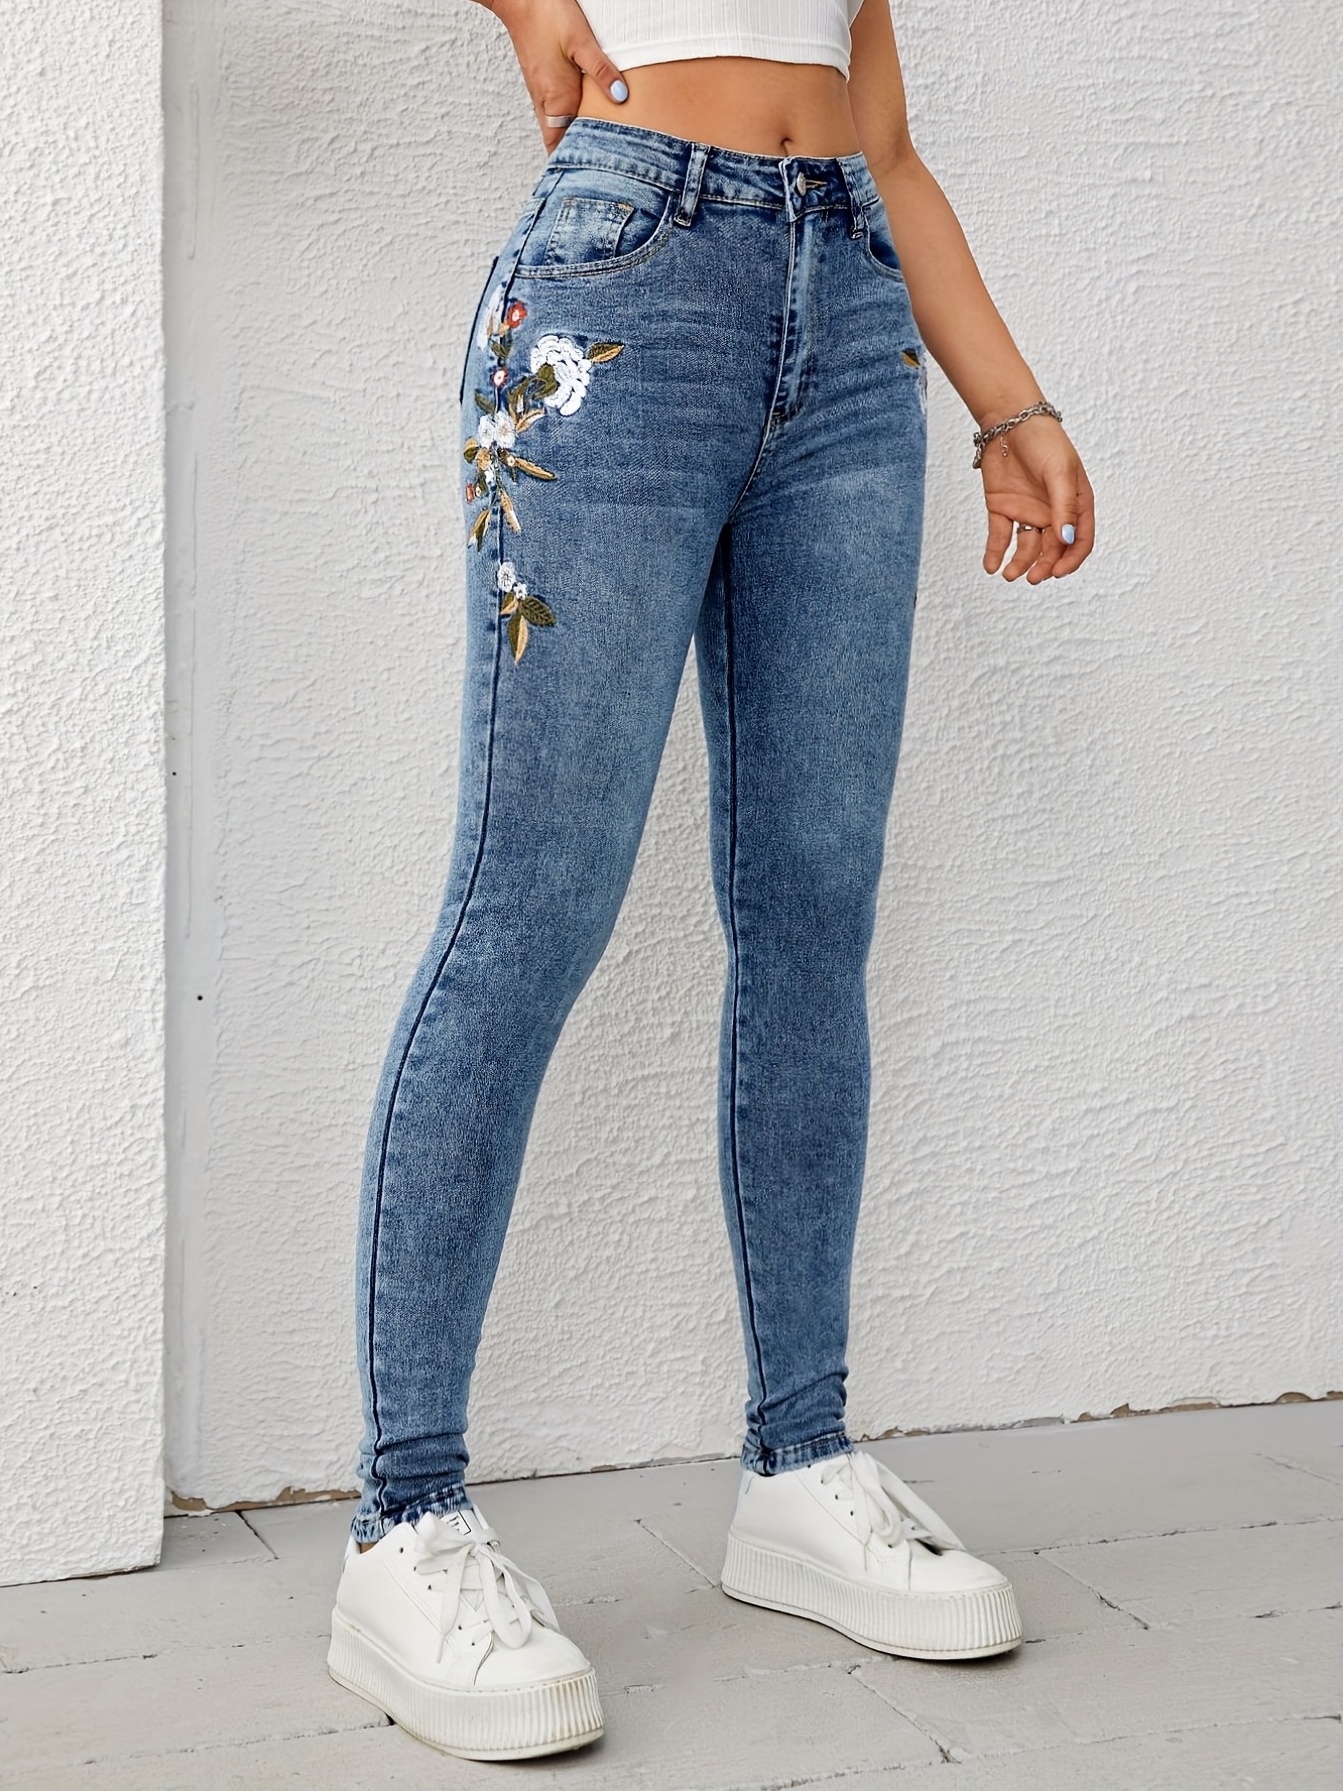 Skinny Floral Embroidered Jeans Pants Blue Denim Pants Blue 